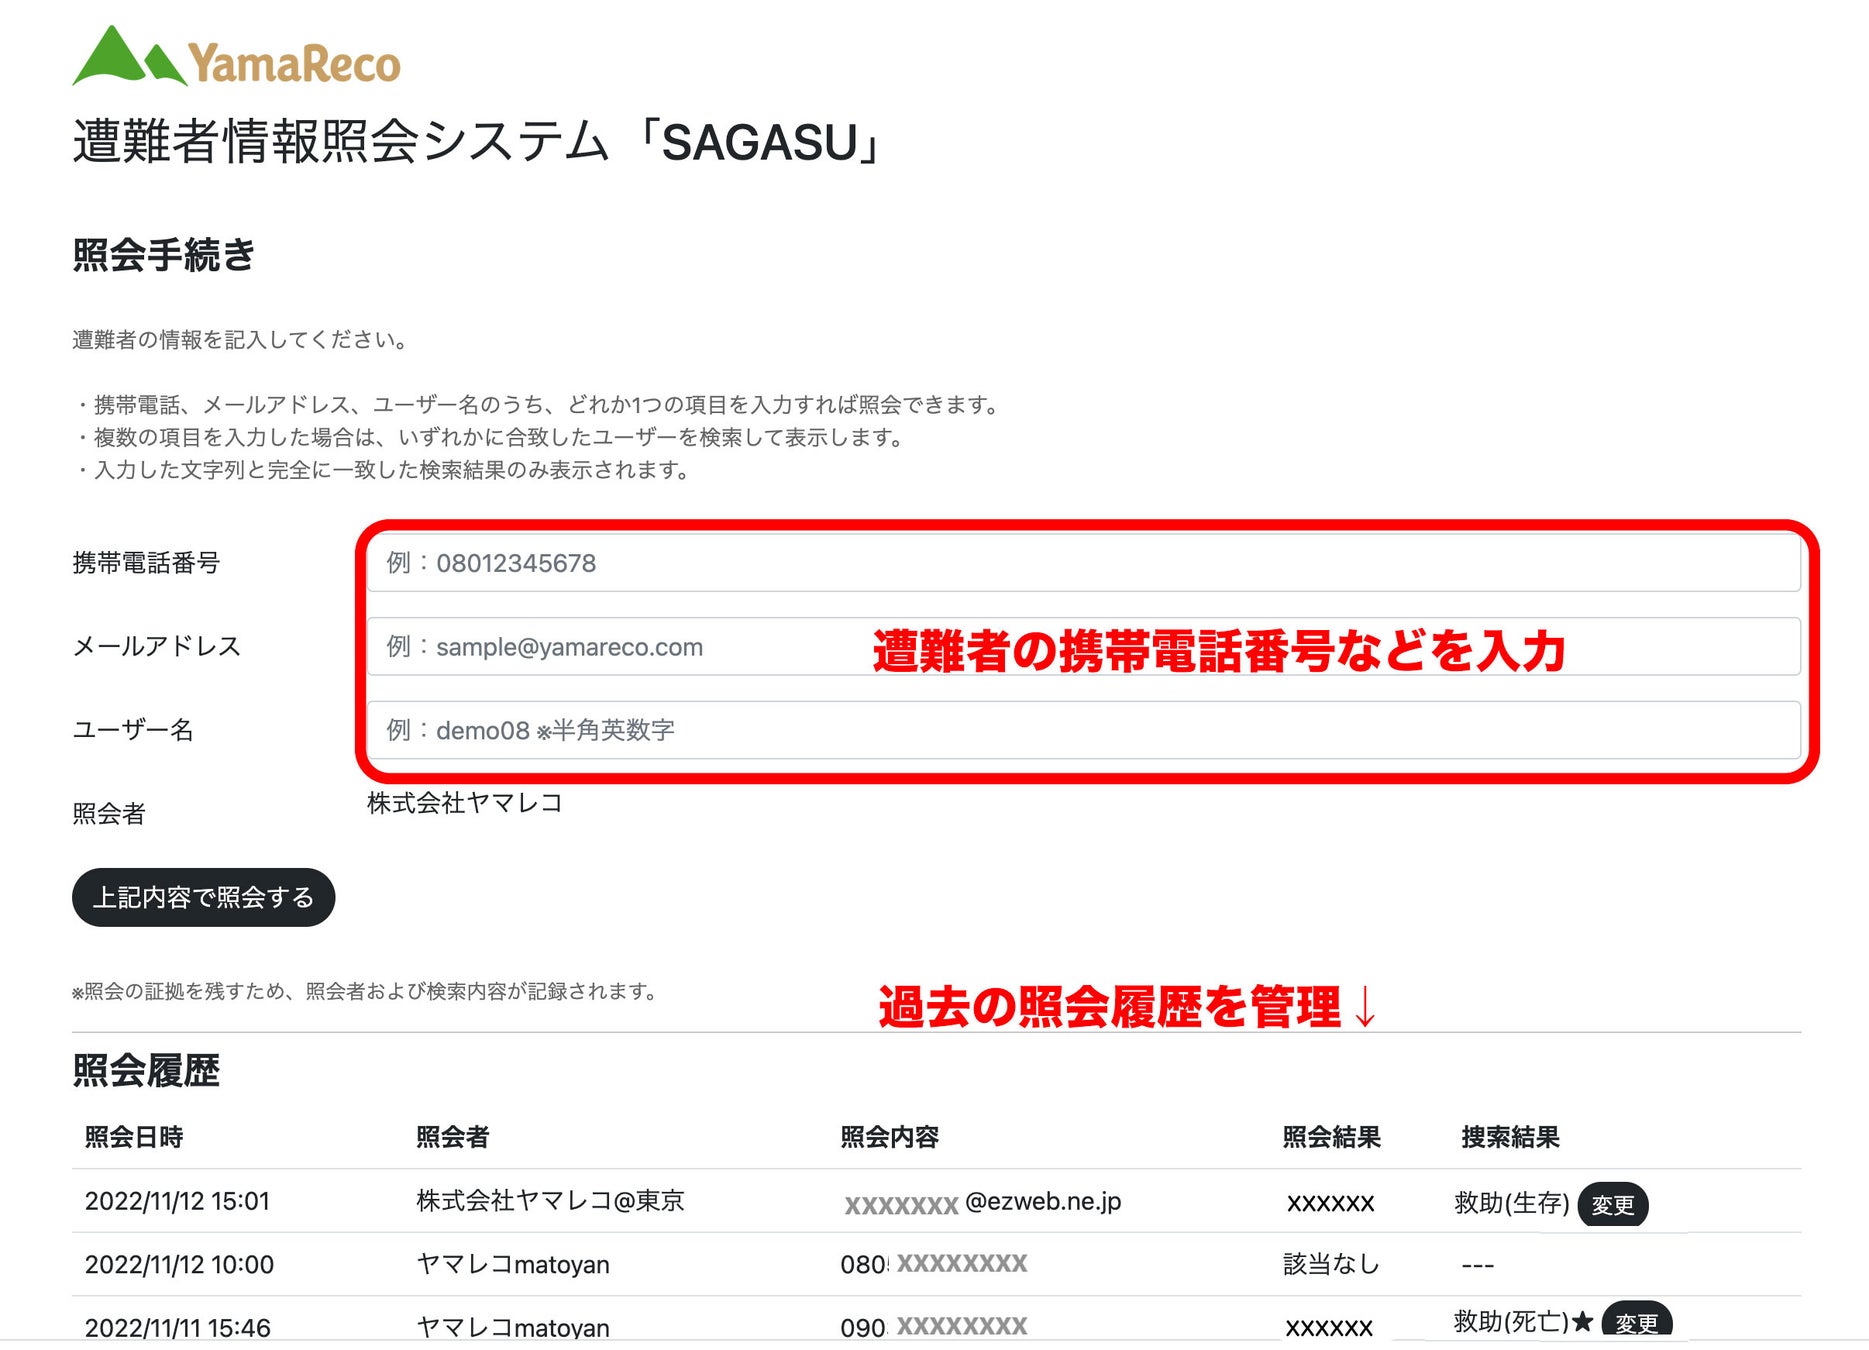 遭難者をいち早く探すシステム「SAGASU（サガス）」を開発し、長野県警に提供する協定を締結のサブ画像5_SAGASUの画面